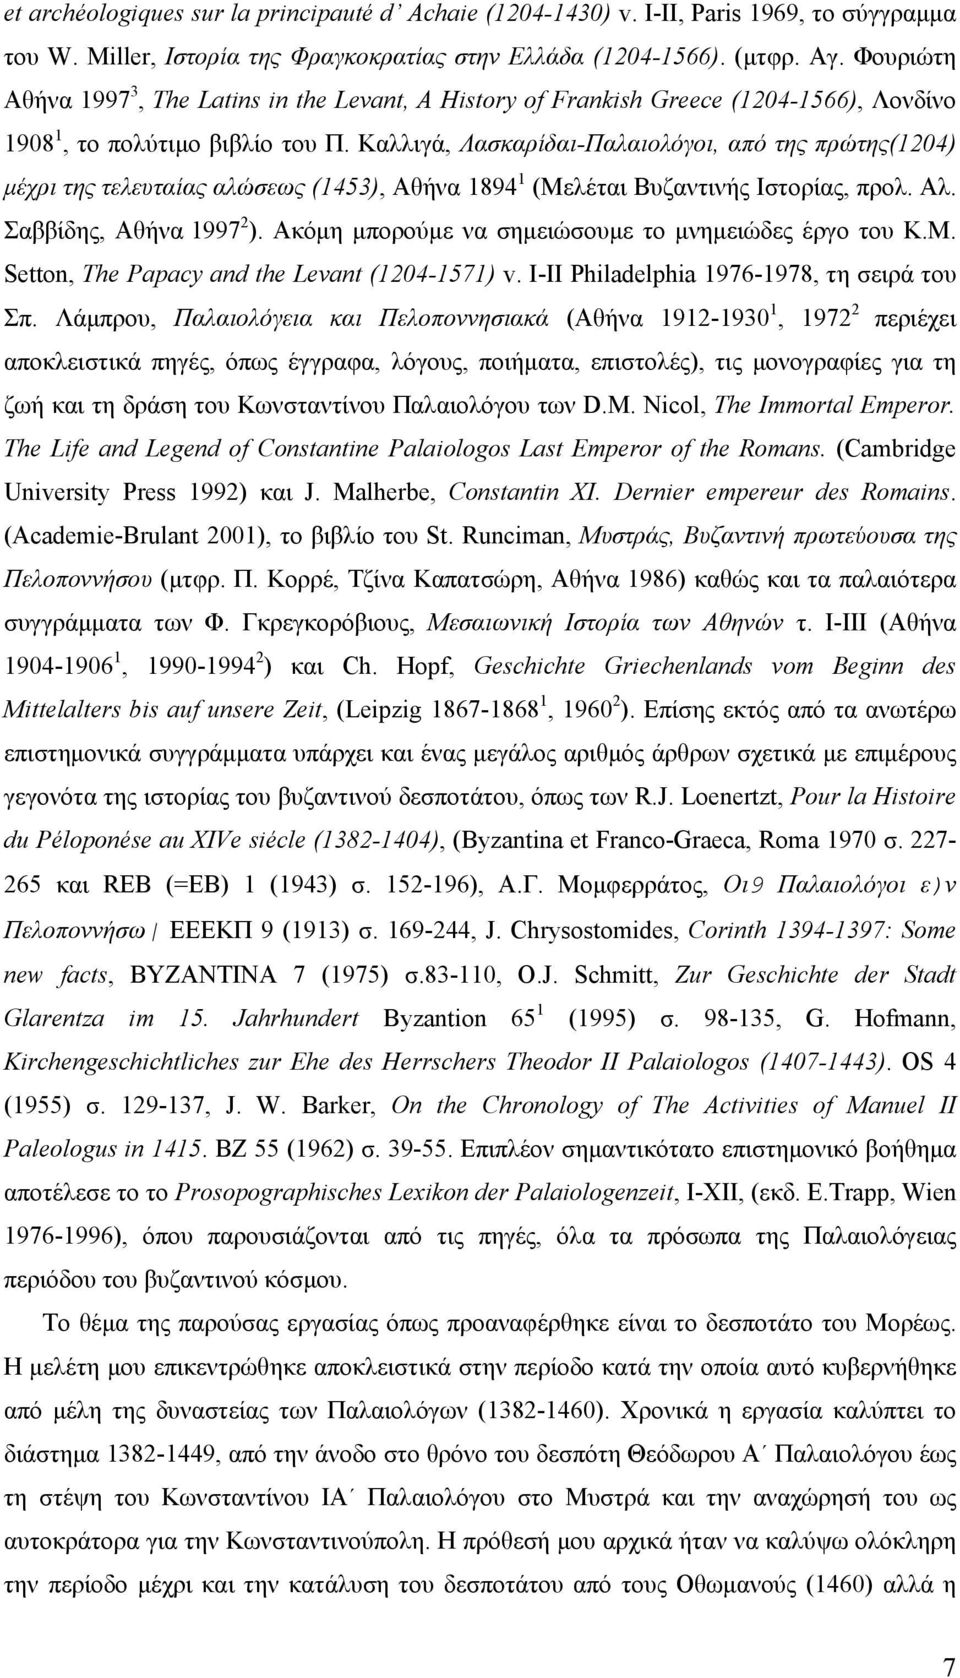 Καλλιγά, Λασκαρίδαι-Παλαιολόγοι, από της πρώτης(1204) μέχρι της τελευταίας αλώσεως (1453), Αθήνα 1894 1 (Μελέται Βυζαντινής Ιστορίας, προλ. Αλ. Σαββίδης, Αθήνα 1997 2 ).